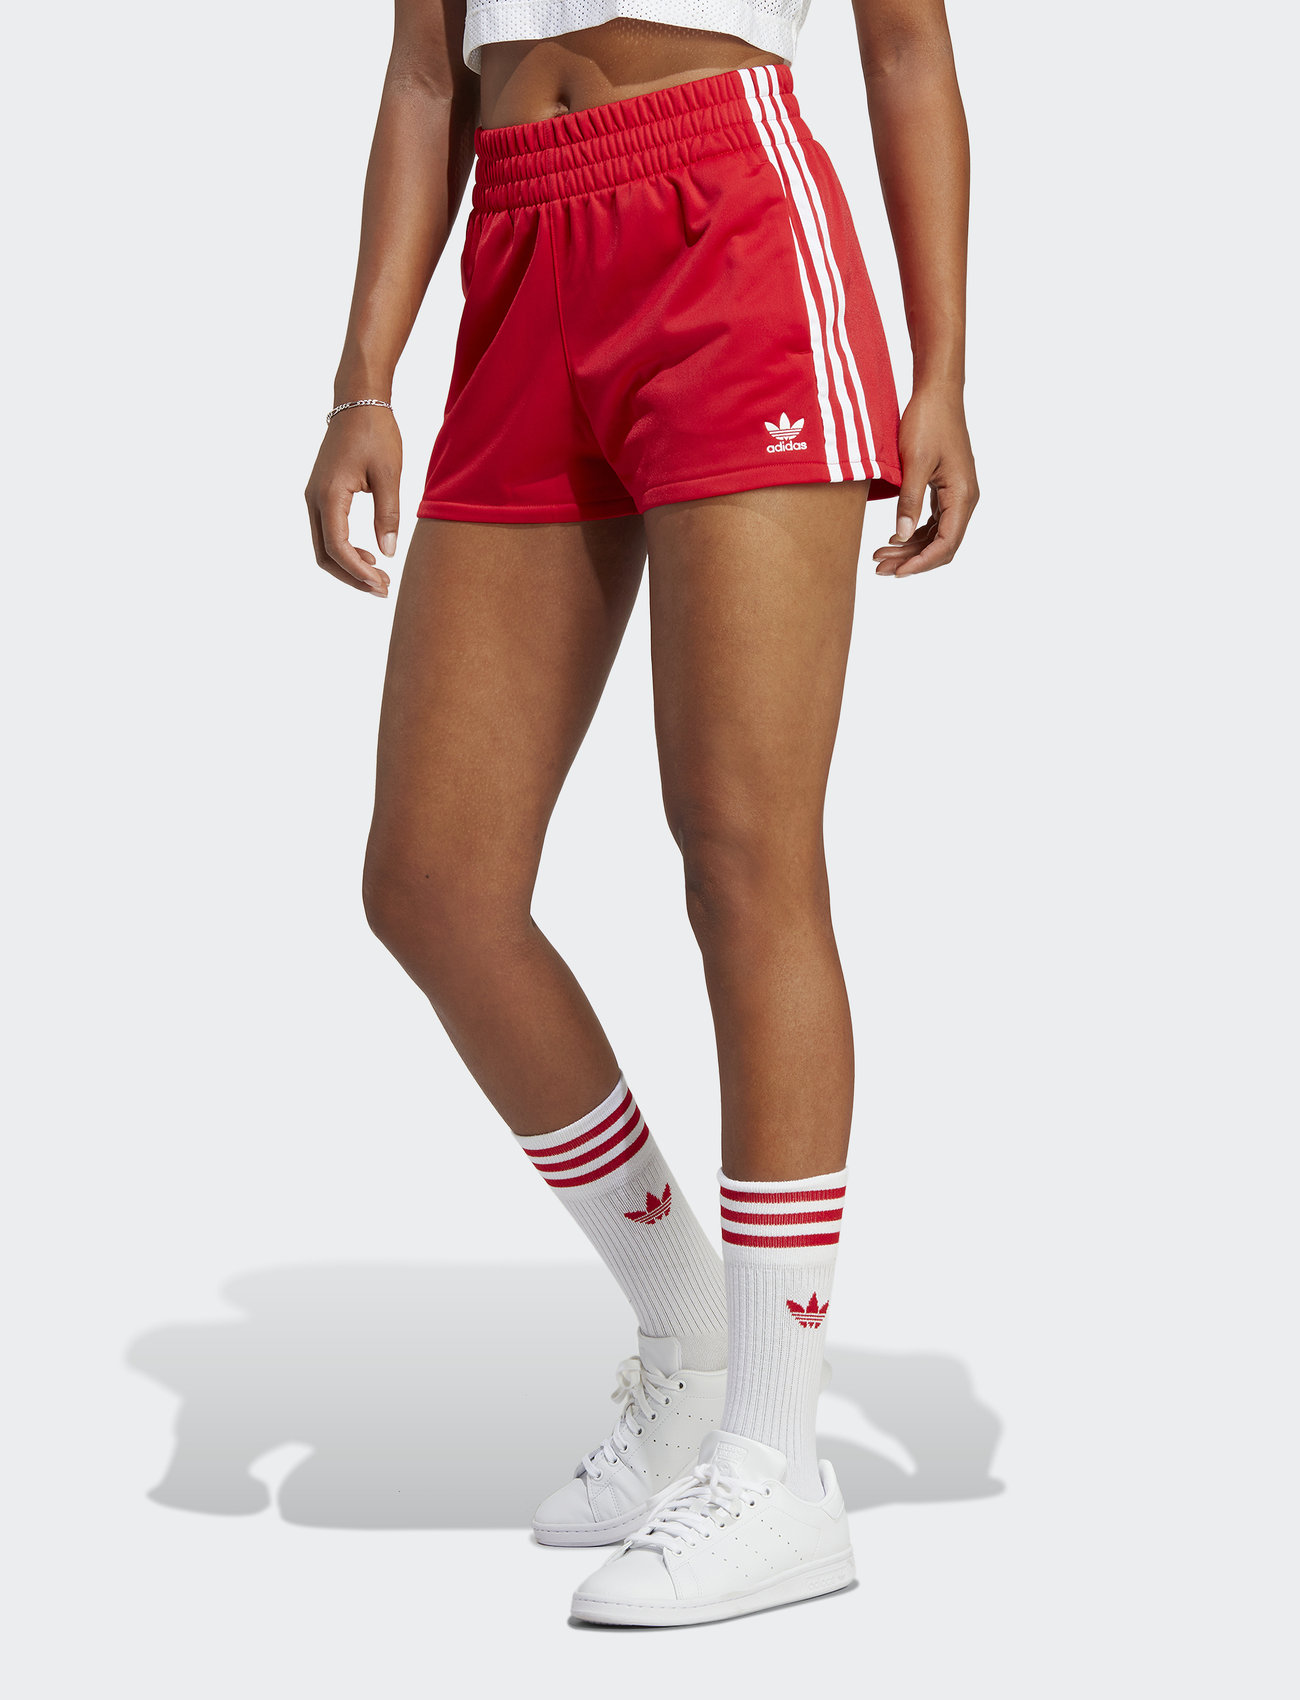 de elite Overtreding Ontwijken adidas Originals 3-stripes Shorts - Korte broeken | Boozt.com